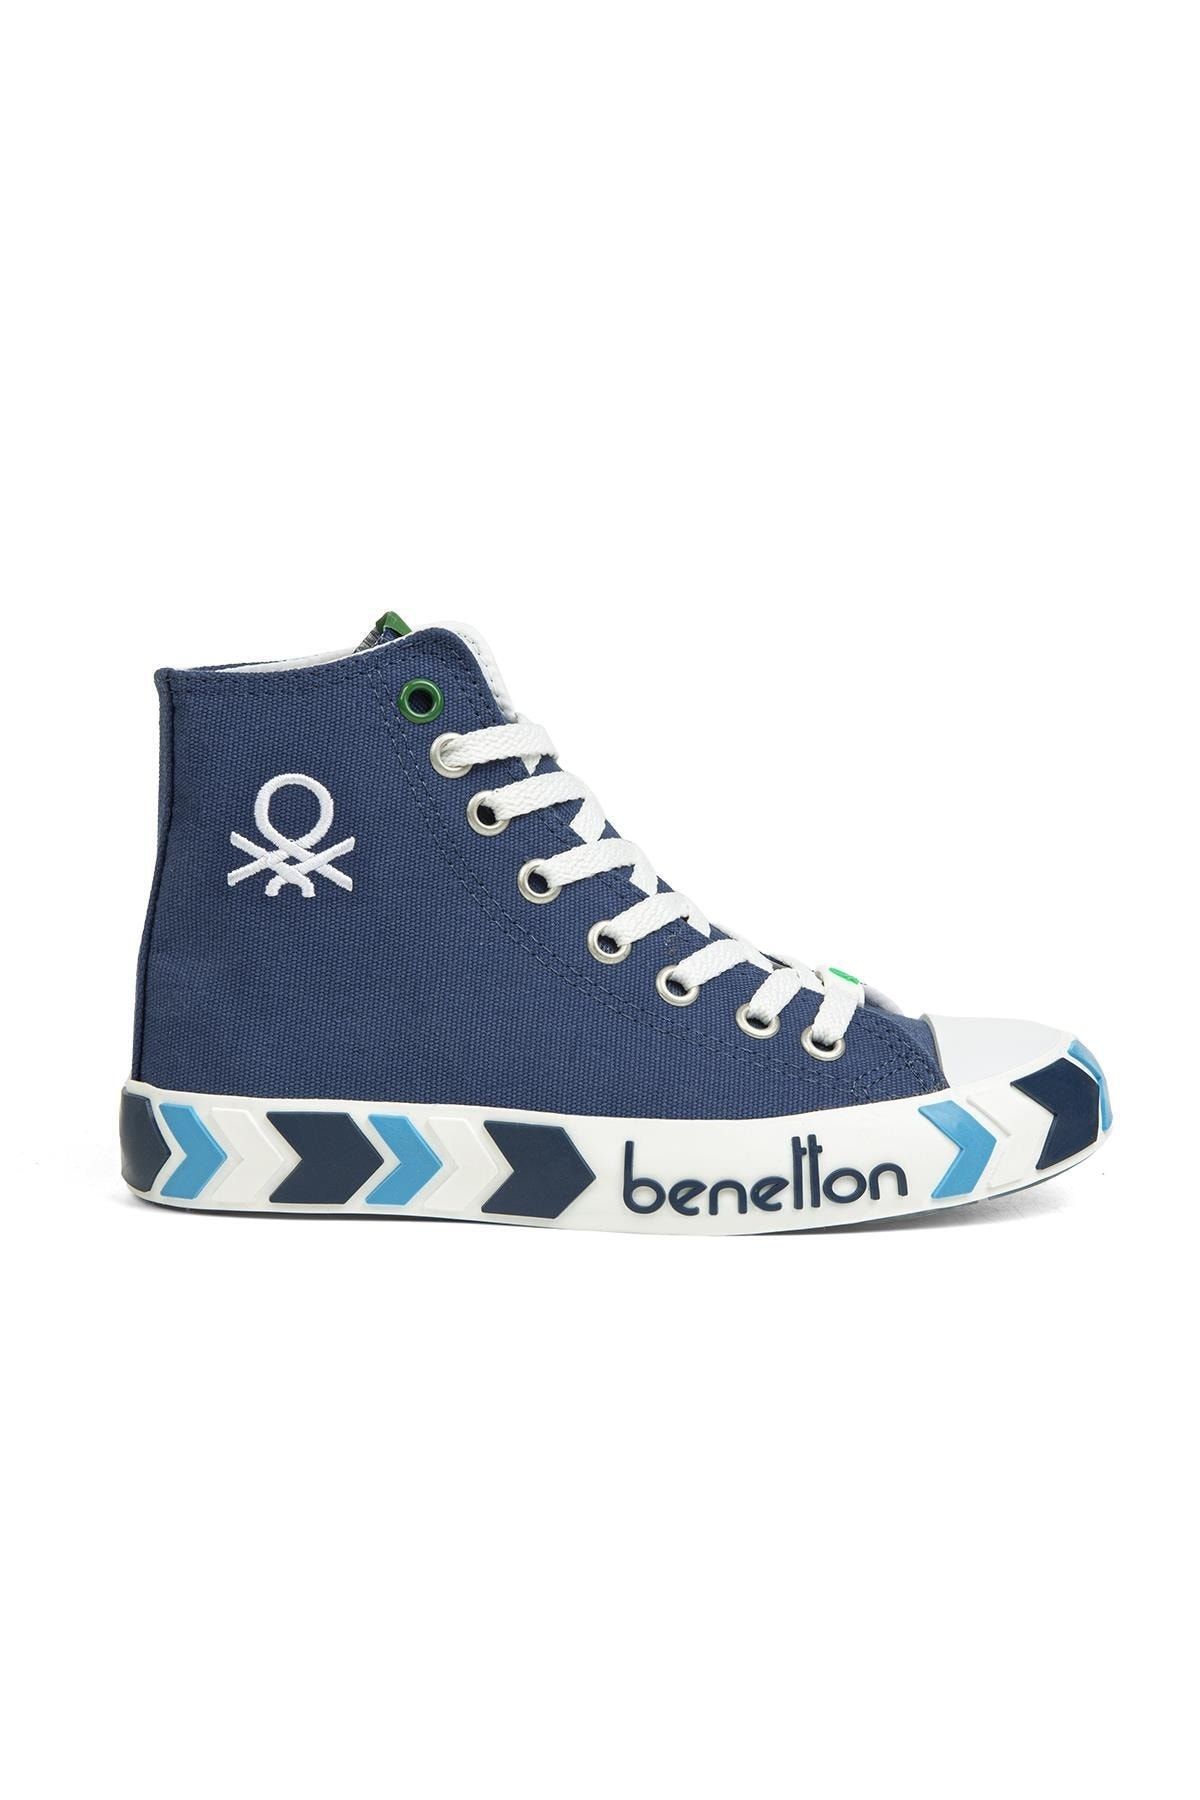 Benetton ® | Bn-30621-3374 Lacivert - Kadın Spor Ayakkabı